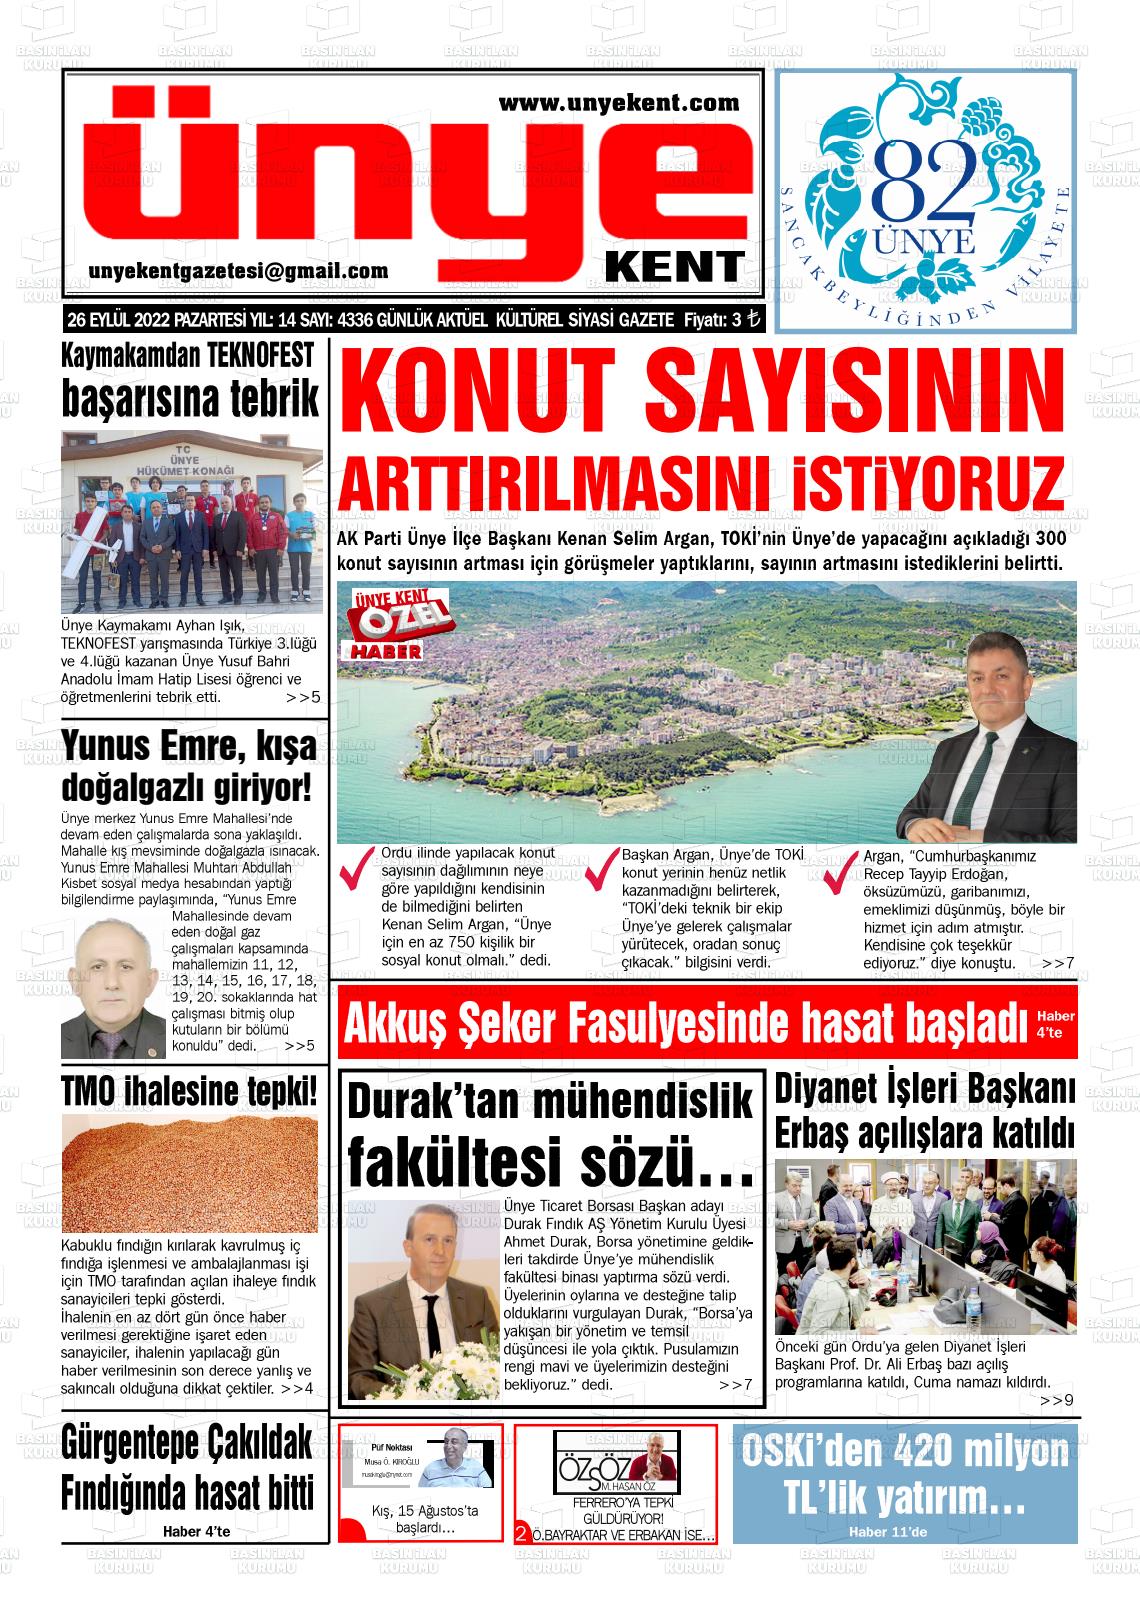 26 Eylül 2022 Ünye Kent Gazete Manşeti